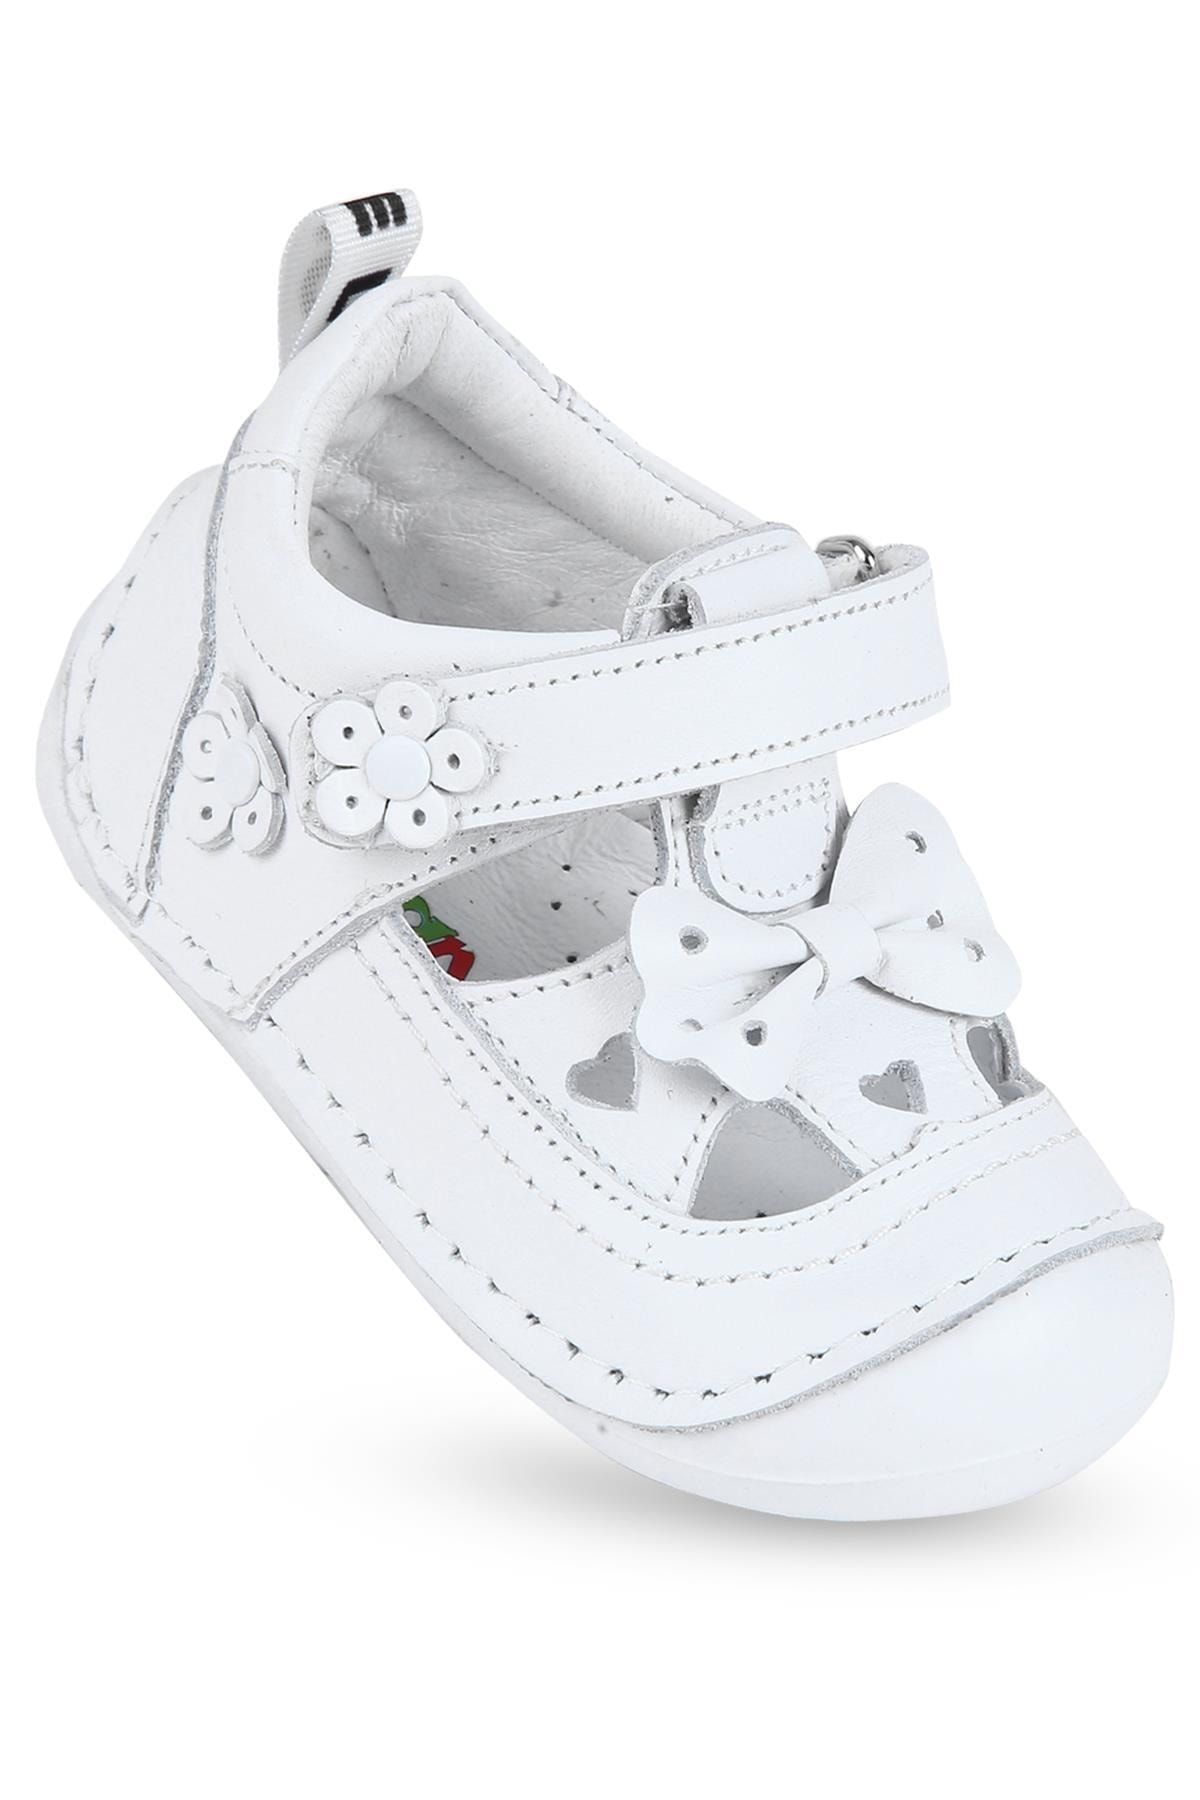 KAPTAN JUNIOR Ilkadım Hakiki Deri Kız Bebek Çocuk Ortopedik Ayakkabı Patik Imsk 601 B-beyaz